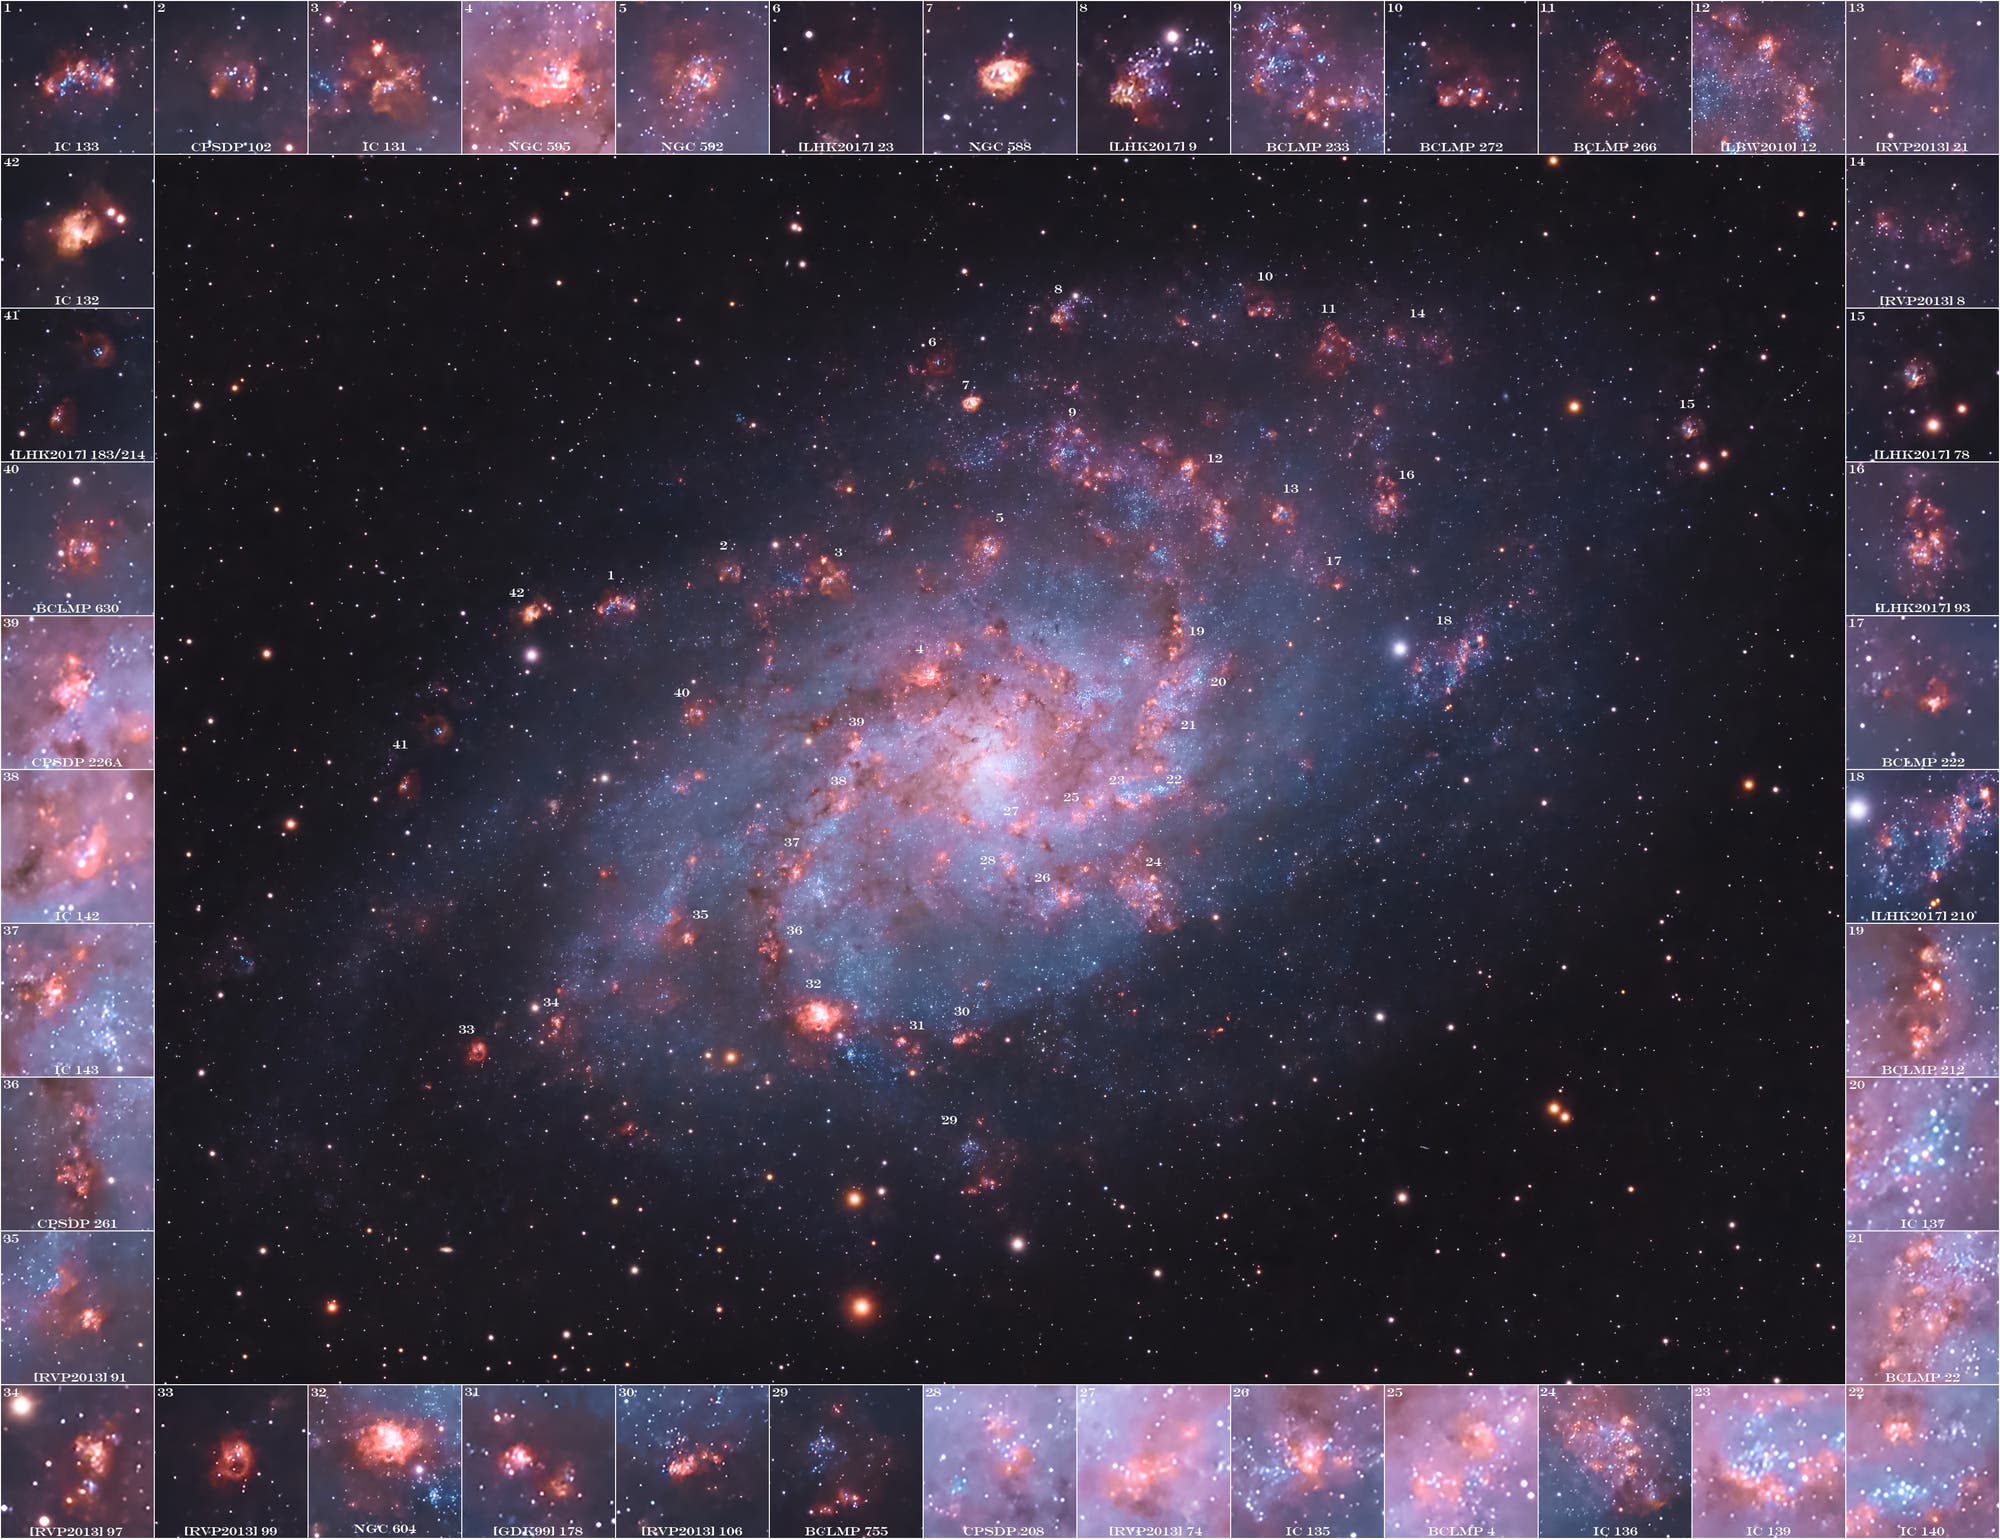 Die Dreiecksgalaxie Messier 33 und ihre Sternentstehungszonen